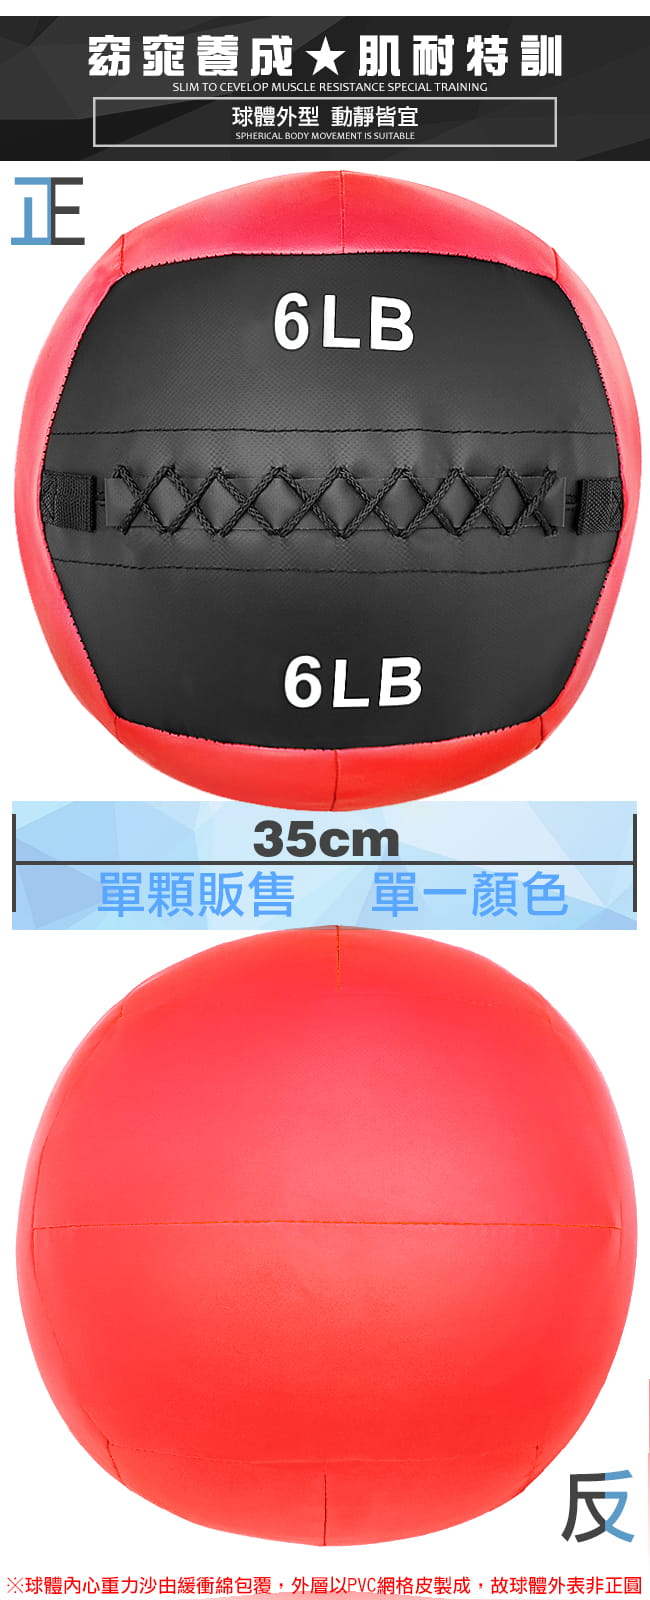 負重力6LB軟式藥球   2.7KG舉重量訓練球 4